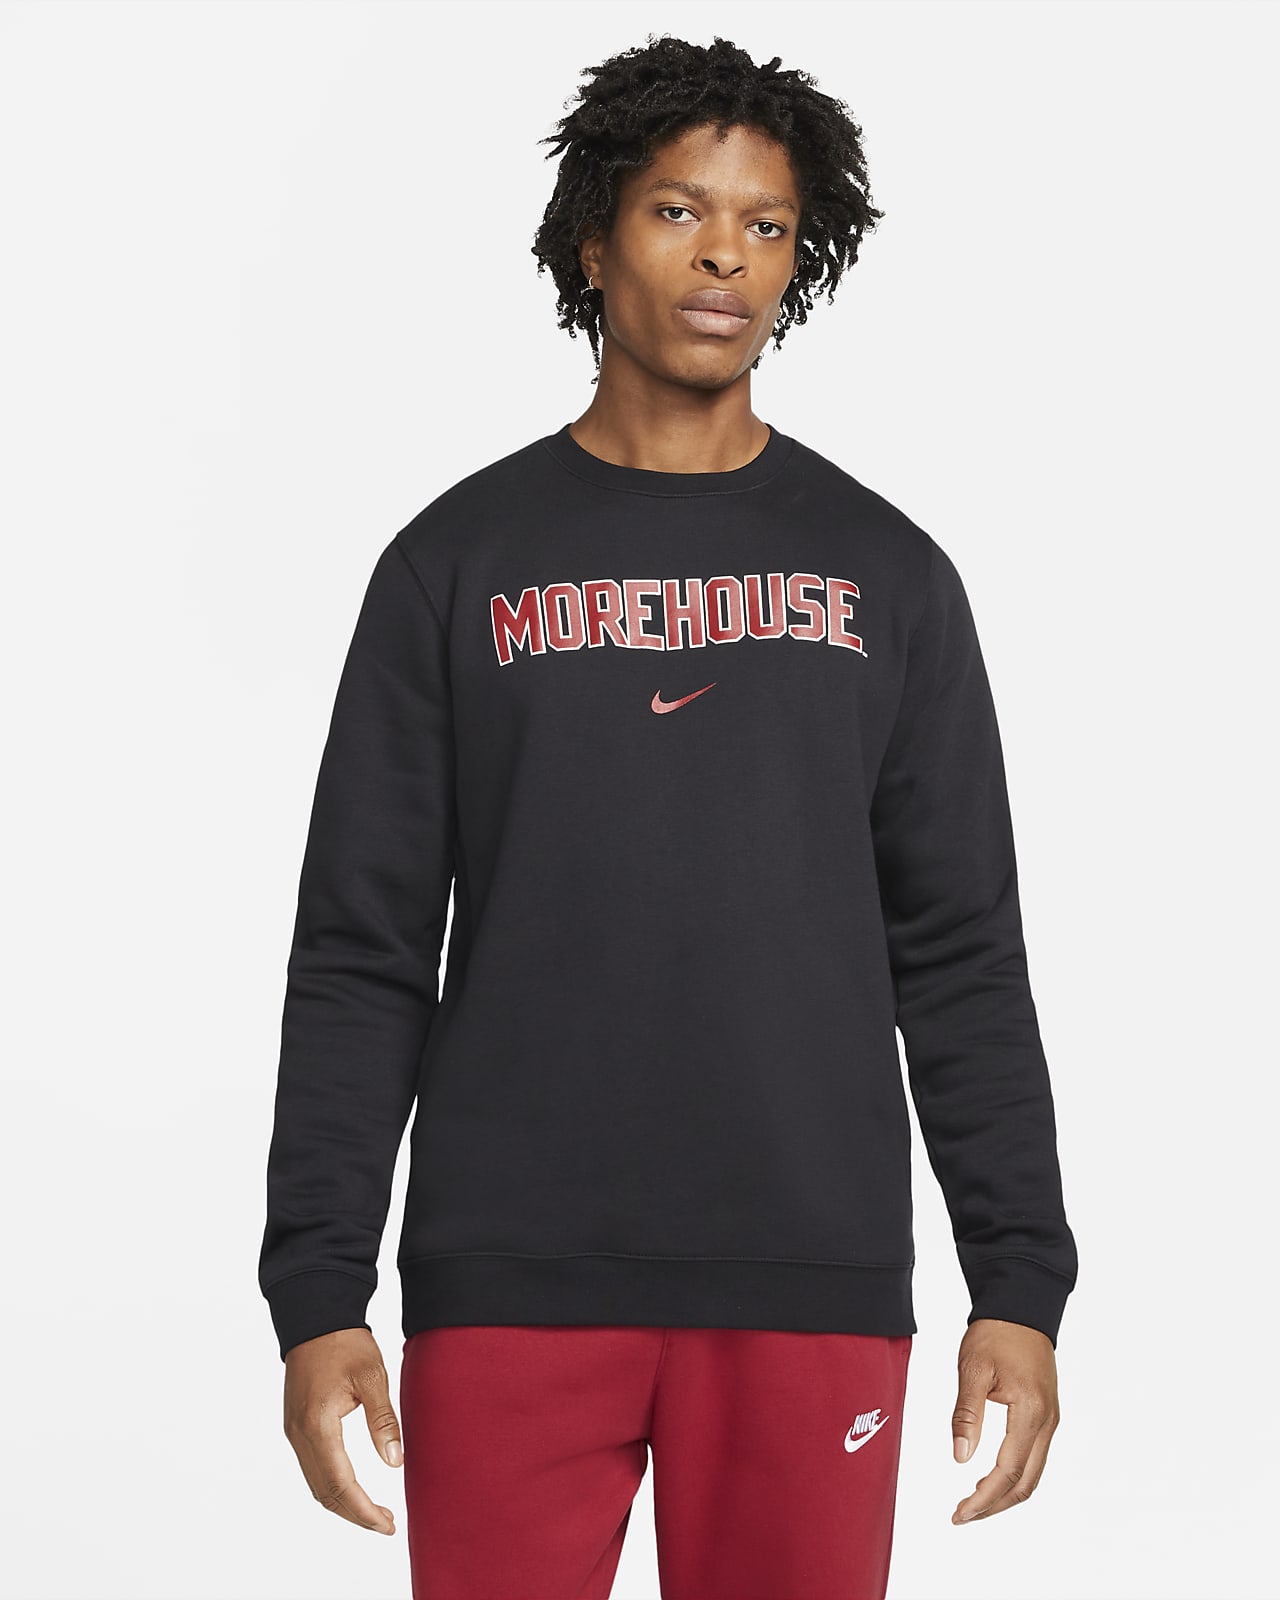 Nike College Club Fleece (Morehouse) Crew Sweatshirt